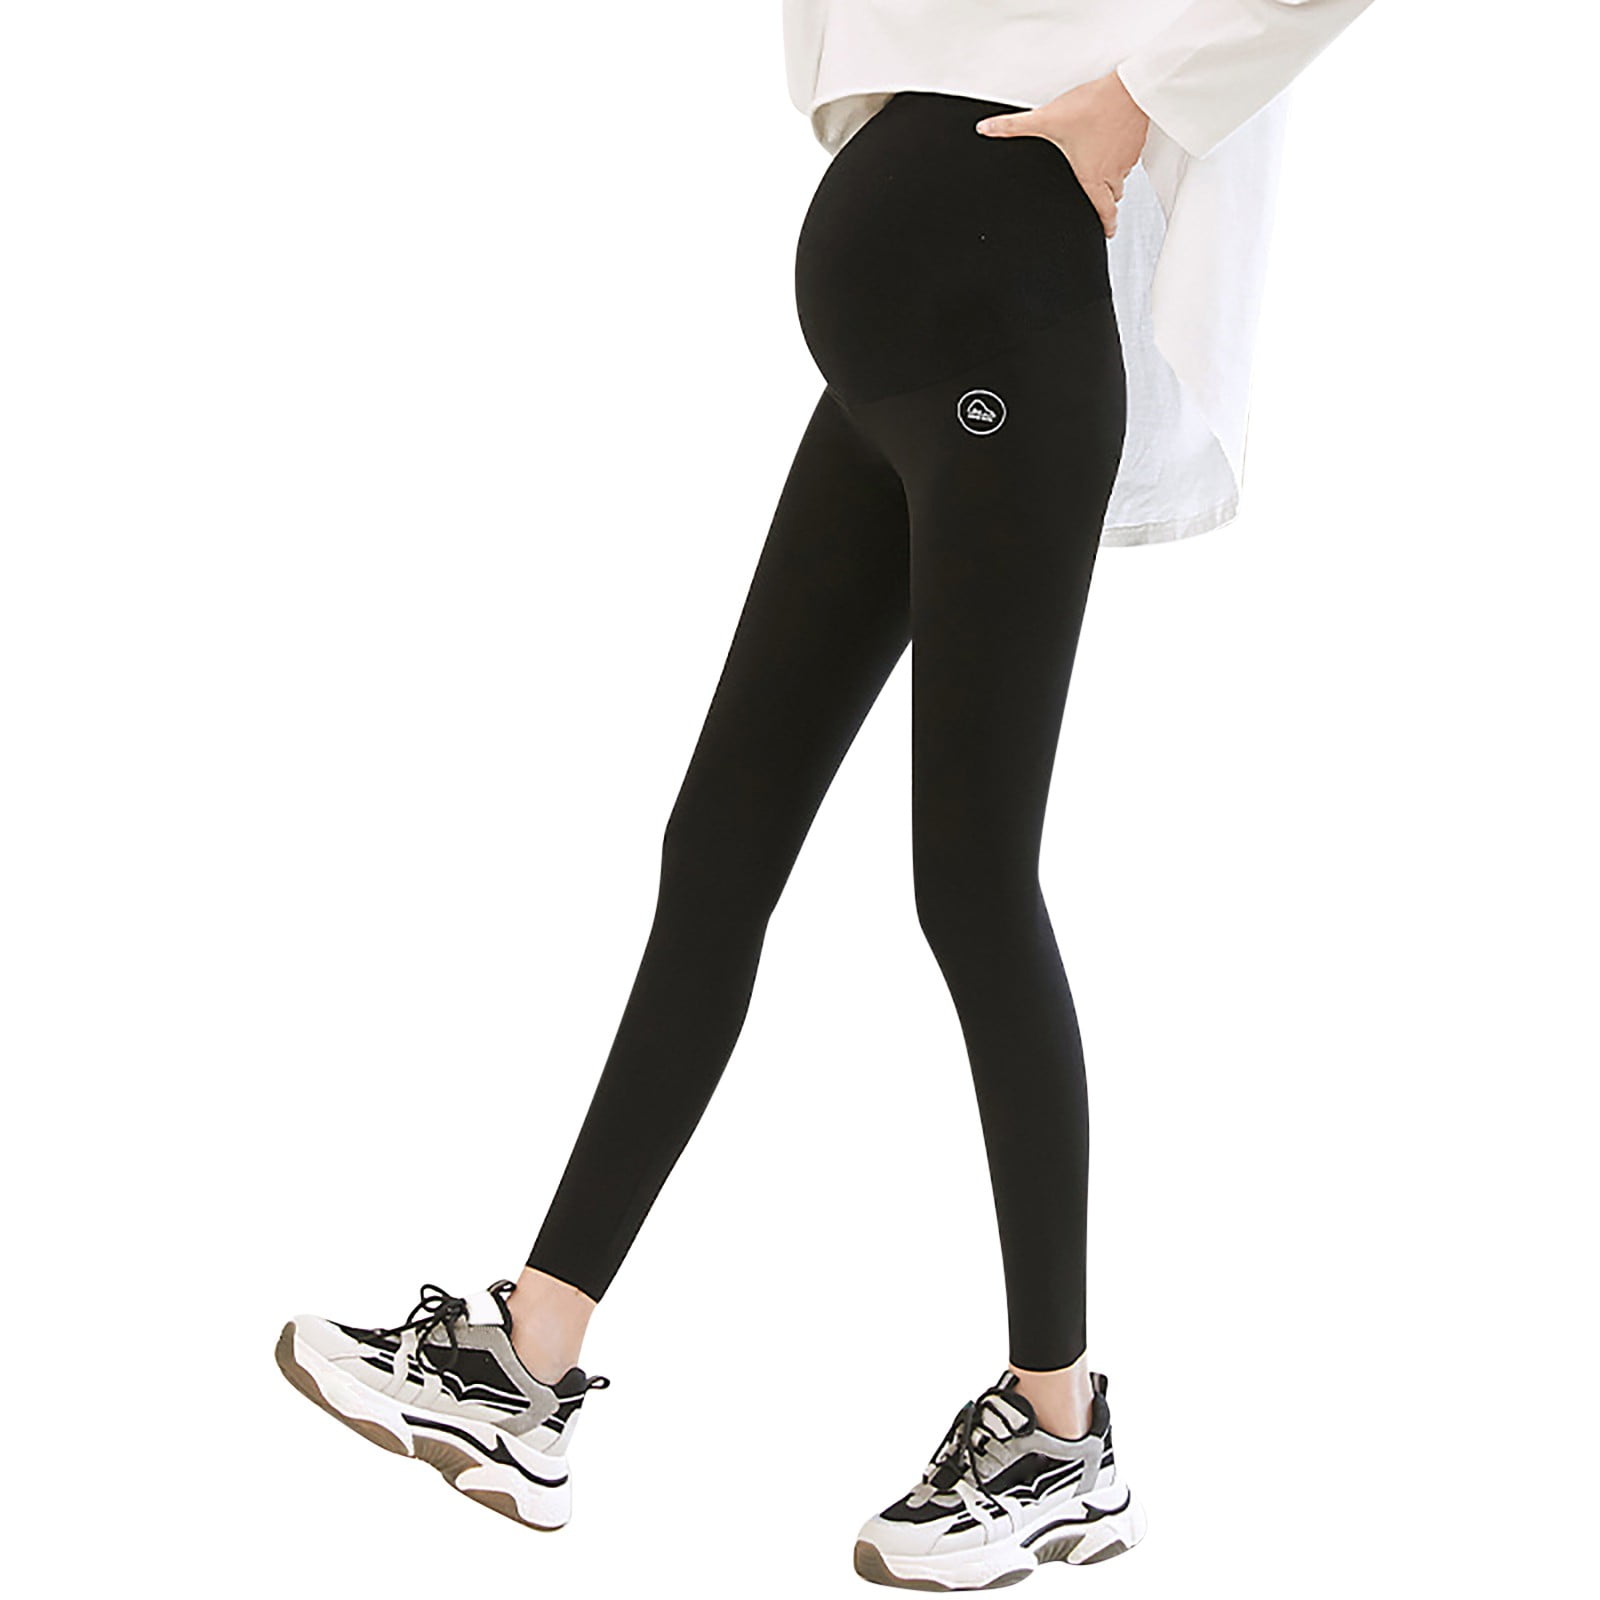 Pgeraug leggings for women High Waist Thin Shark Skin Pregnant Wearing  Pregnant Leggings pants for women Black XL